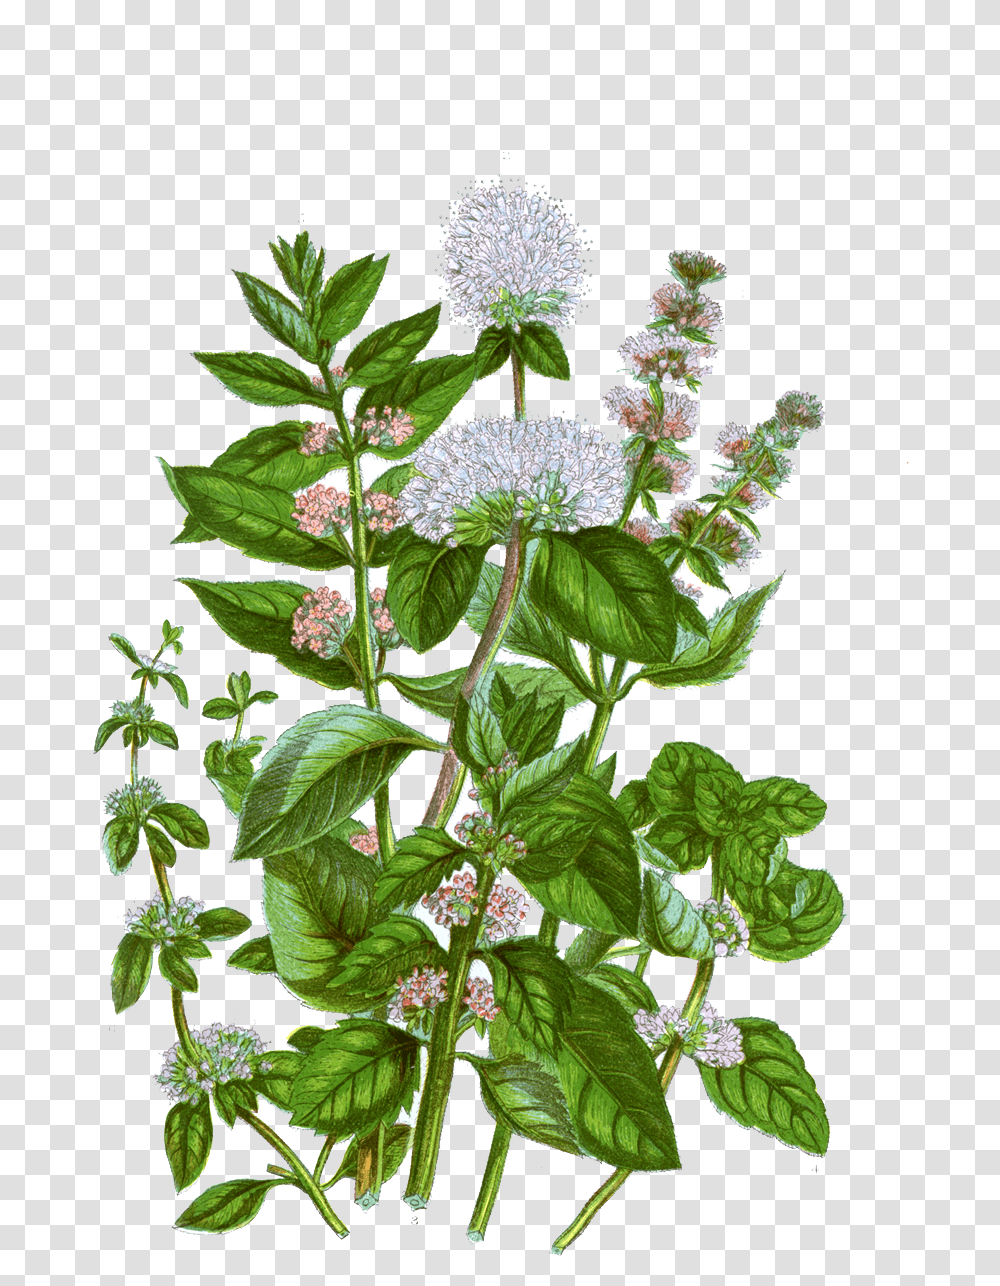 Mint Botanical Illustration Download Mint Botanical Illustration, Plant, Flower, Blossom, Acanthaceae Transparent Png